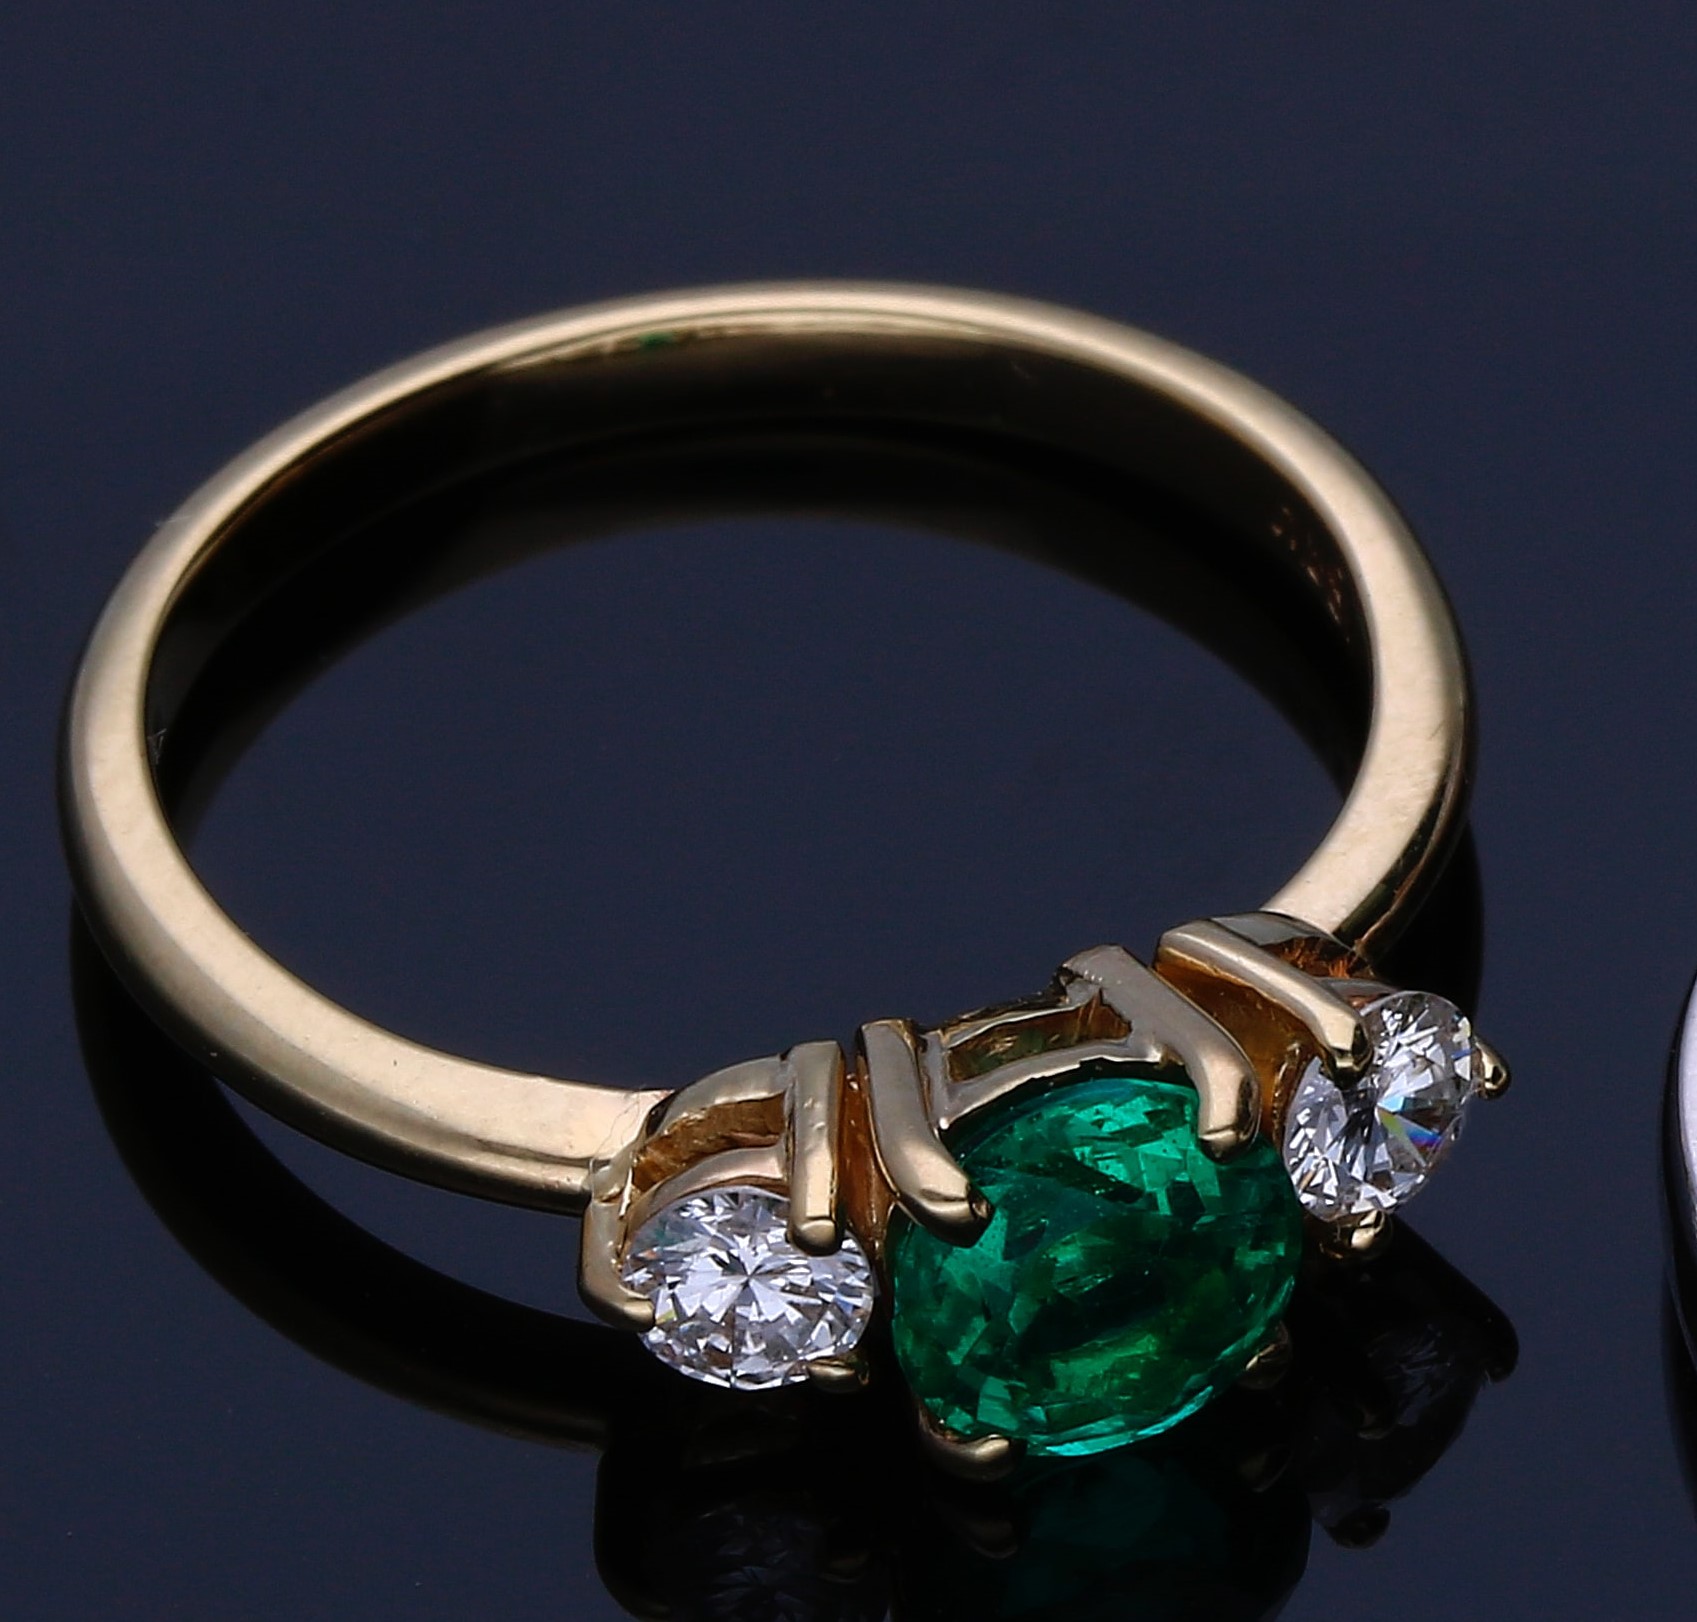 Fotografía de un anillo dorado con diamantes blancos y uno color  verde en el centro en un fondo oscuro